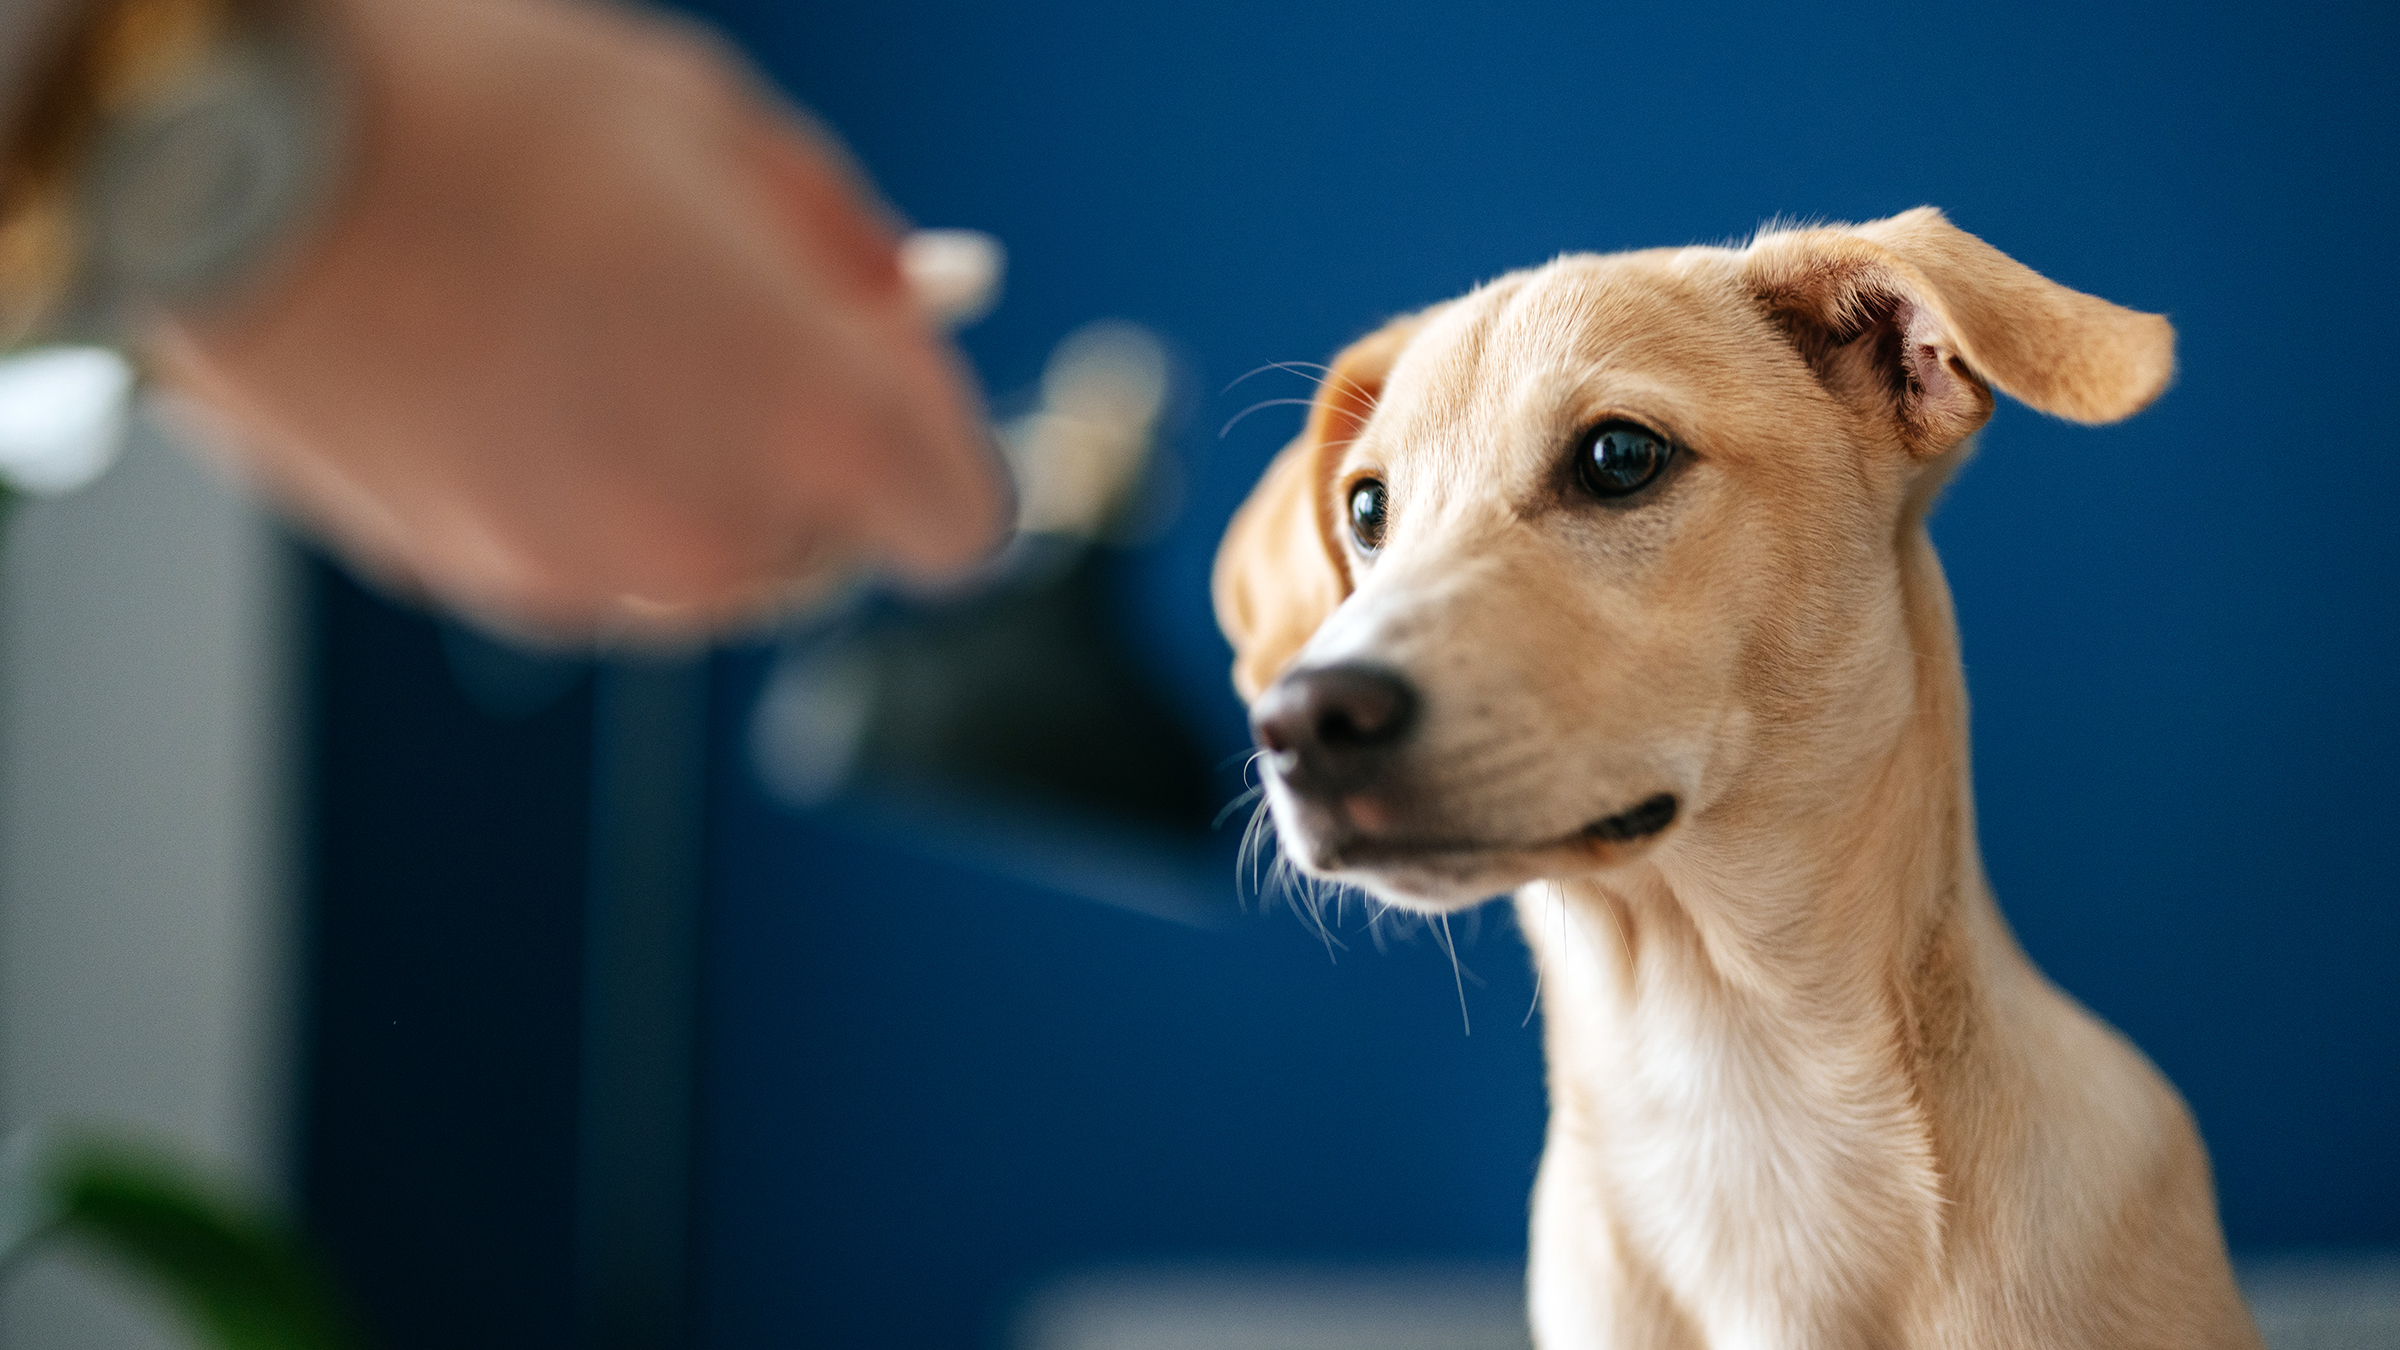 تمام سگ ها حداقل یک بار در طول زندگی خود مجبورند داروهای خوراکی مصرف کنند. همین مسئله میتواند چالش بزرگی برای سرپرست سگ باشد. اگر باز کردن دهان سگ و ریختن دارو در دهان آن _به خصوص اگر دارو تلخ باشد یا سگ مایل به خوردن آن نباشد_ به درستی انجام نشود میتواند خاطره بدی از شما در ذهن سگتان به جای بگذارد. بنابراین مهم است که روش صحیح شربت دادن به سگ را بیاموزید. هنگامی که دوزاژ شربت به صورت چند نوبت در طول شبانه روز باشد، دامپزشک روش صحیح انجام دادن آن را به شما نشان میدهد تا مجبور نباشید برای شربت دادن به سگ، هر چند ساعت یکبار به کلینیک مراجعه کنید. ممکن است در لحظه همه چیز ساده به نظر برسد اما به محض ورود به خانه اوضاع پیچیده خواهد شد. نگران نباشید! تنها چیزی که برای شربت دادن به سگ لازم دارید کمی تمرین، صبر و پشتکار است. این مقاله نیز به شما کمک خواهد کرد. کافیست موارد زیر را قدم به قدم انجام دهید: